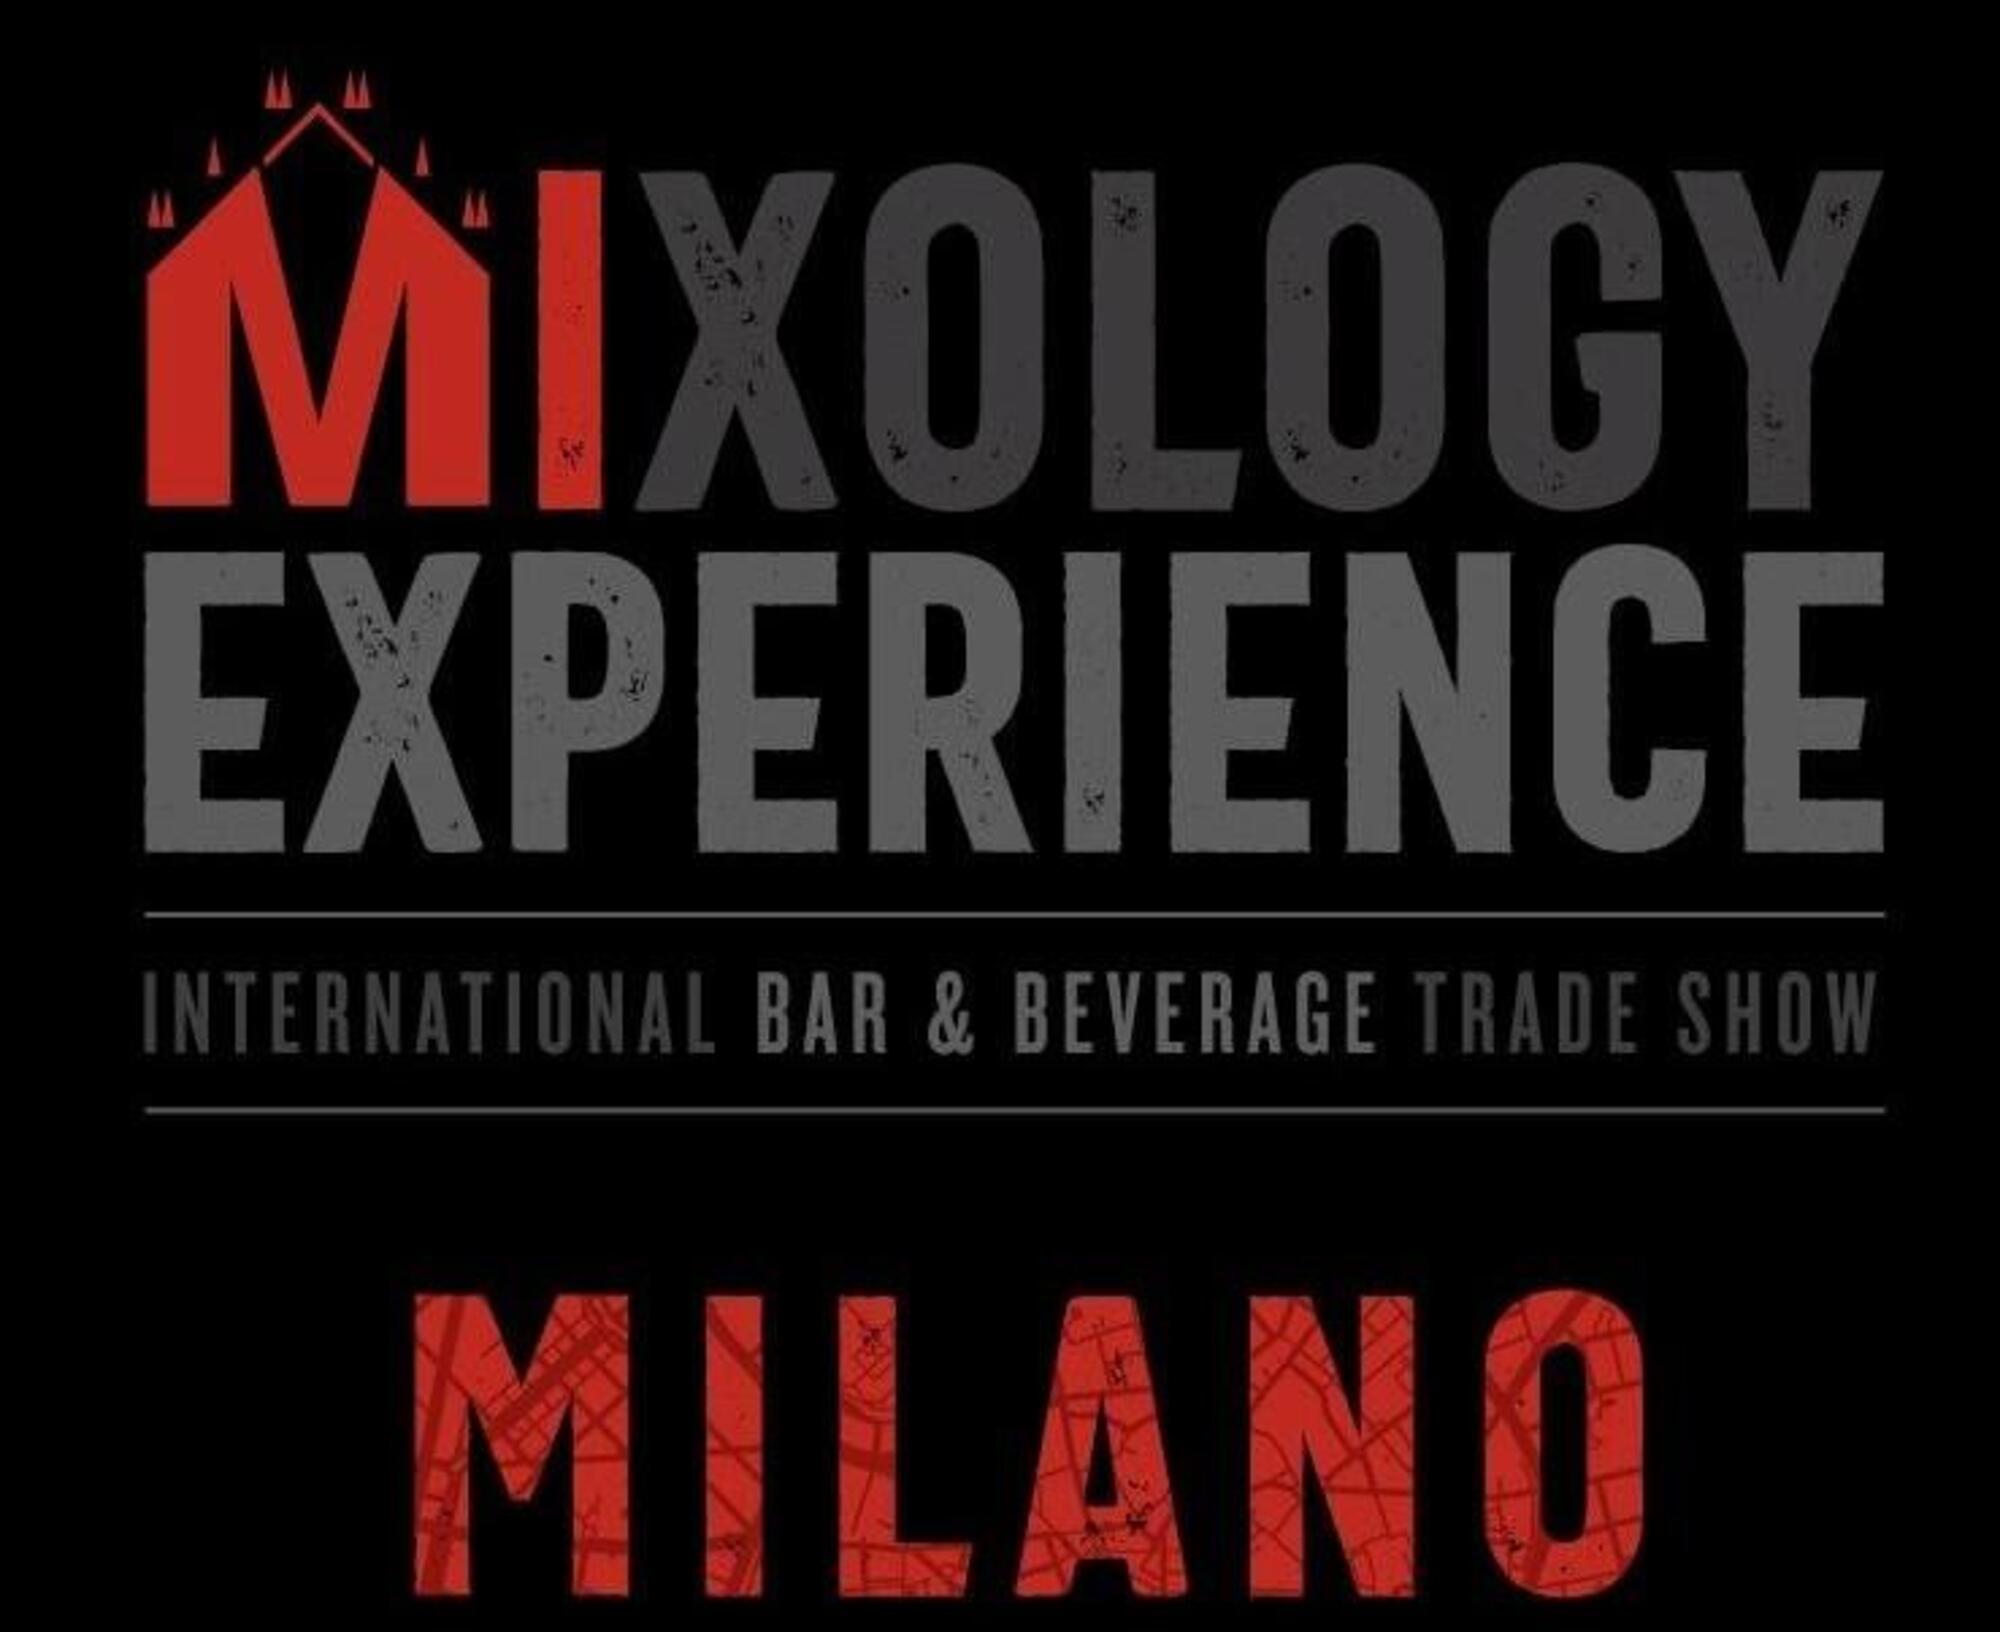 Mixology Experience dal 17 al 19 marzo 